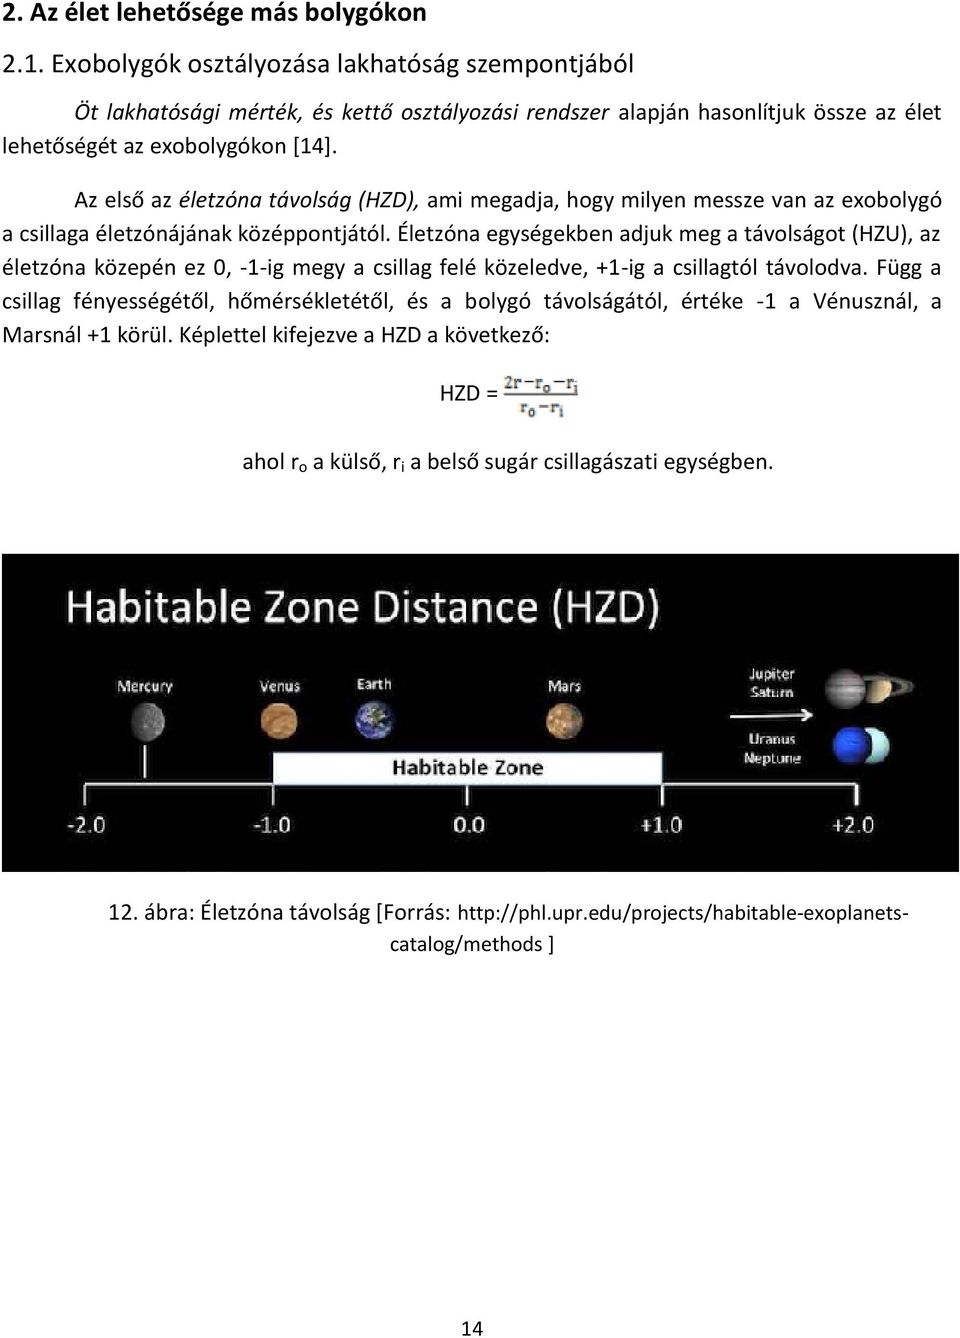 Az első az életzóna távolság (HZD), ami megadja, hogy milyen messze van az exobolygó a csillaga életzónájának középpontjától.